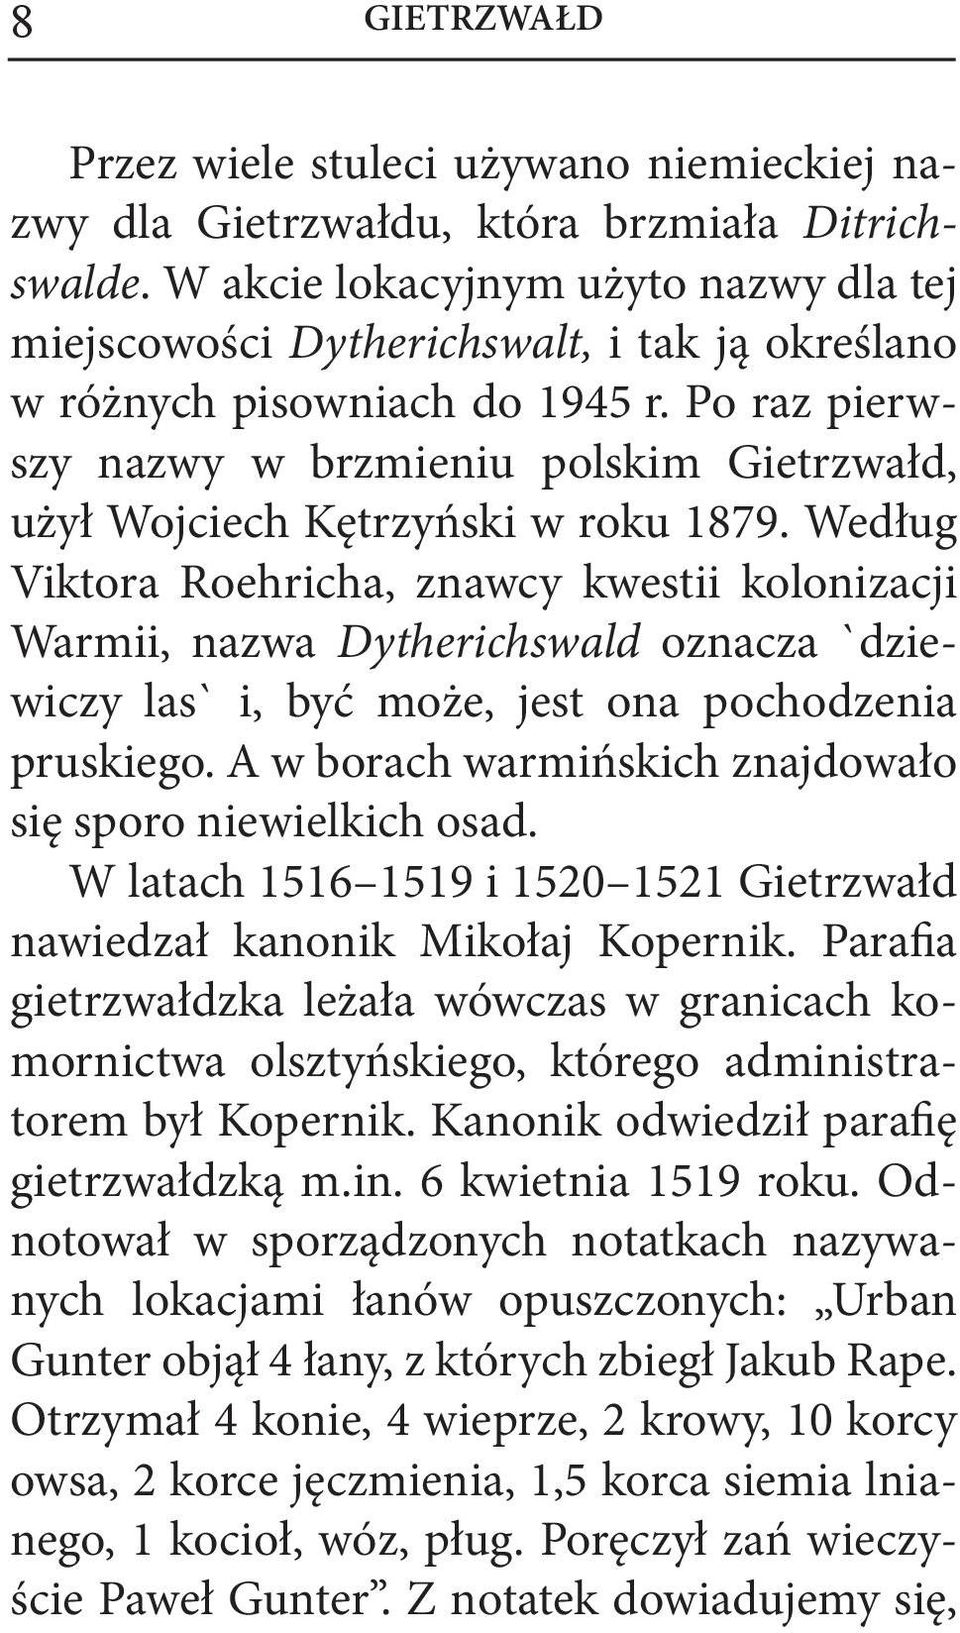 Po raz pierwszy nazwy w brzmieniu polskim Gietrzwałd, użył Wojciech Kętrzyński w roku 1879.